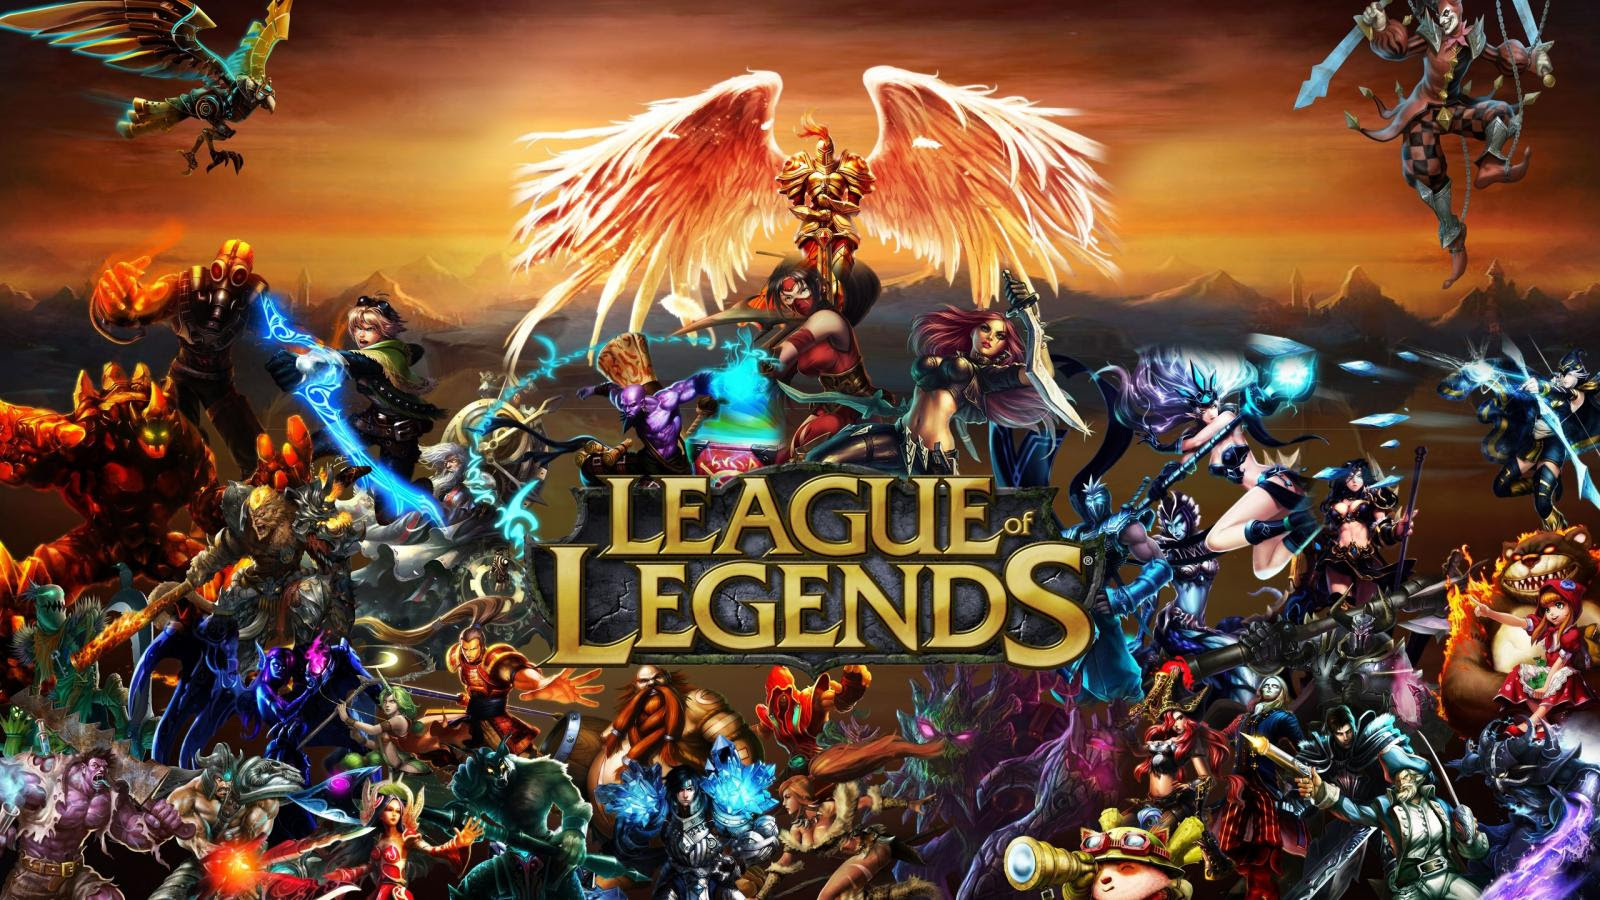 Guida: Come iniziare League of Legends gioco online, Recensione e consigli